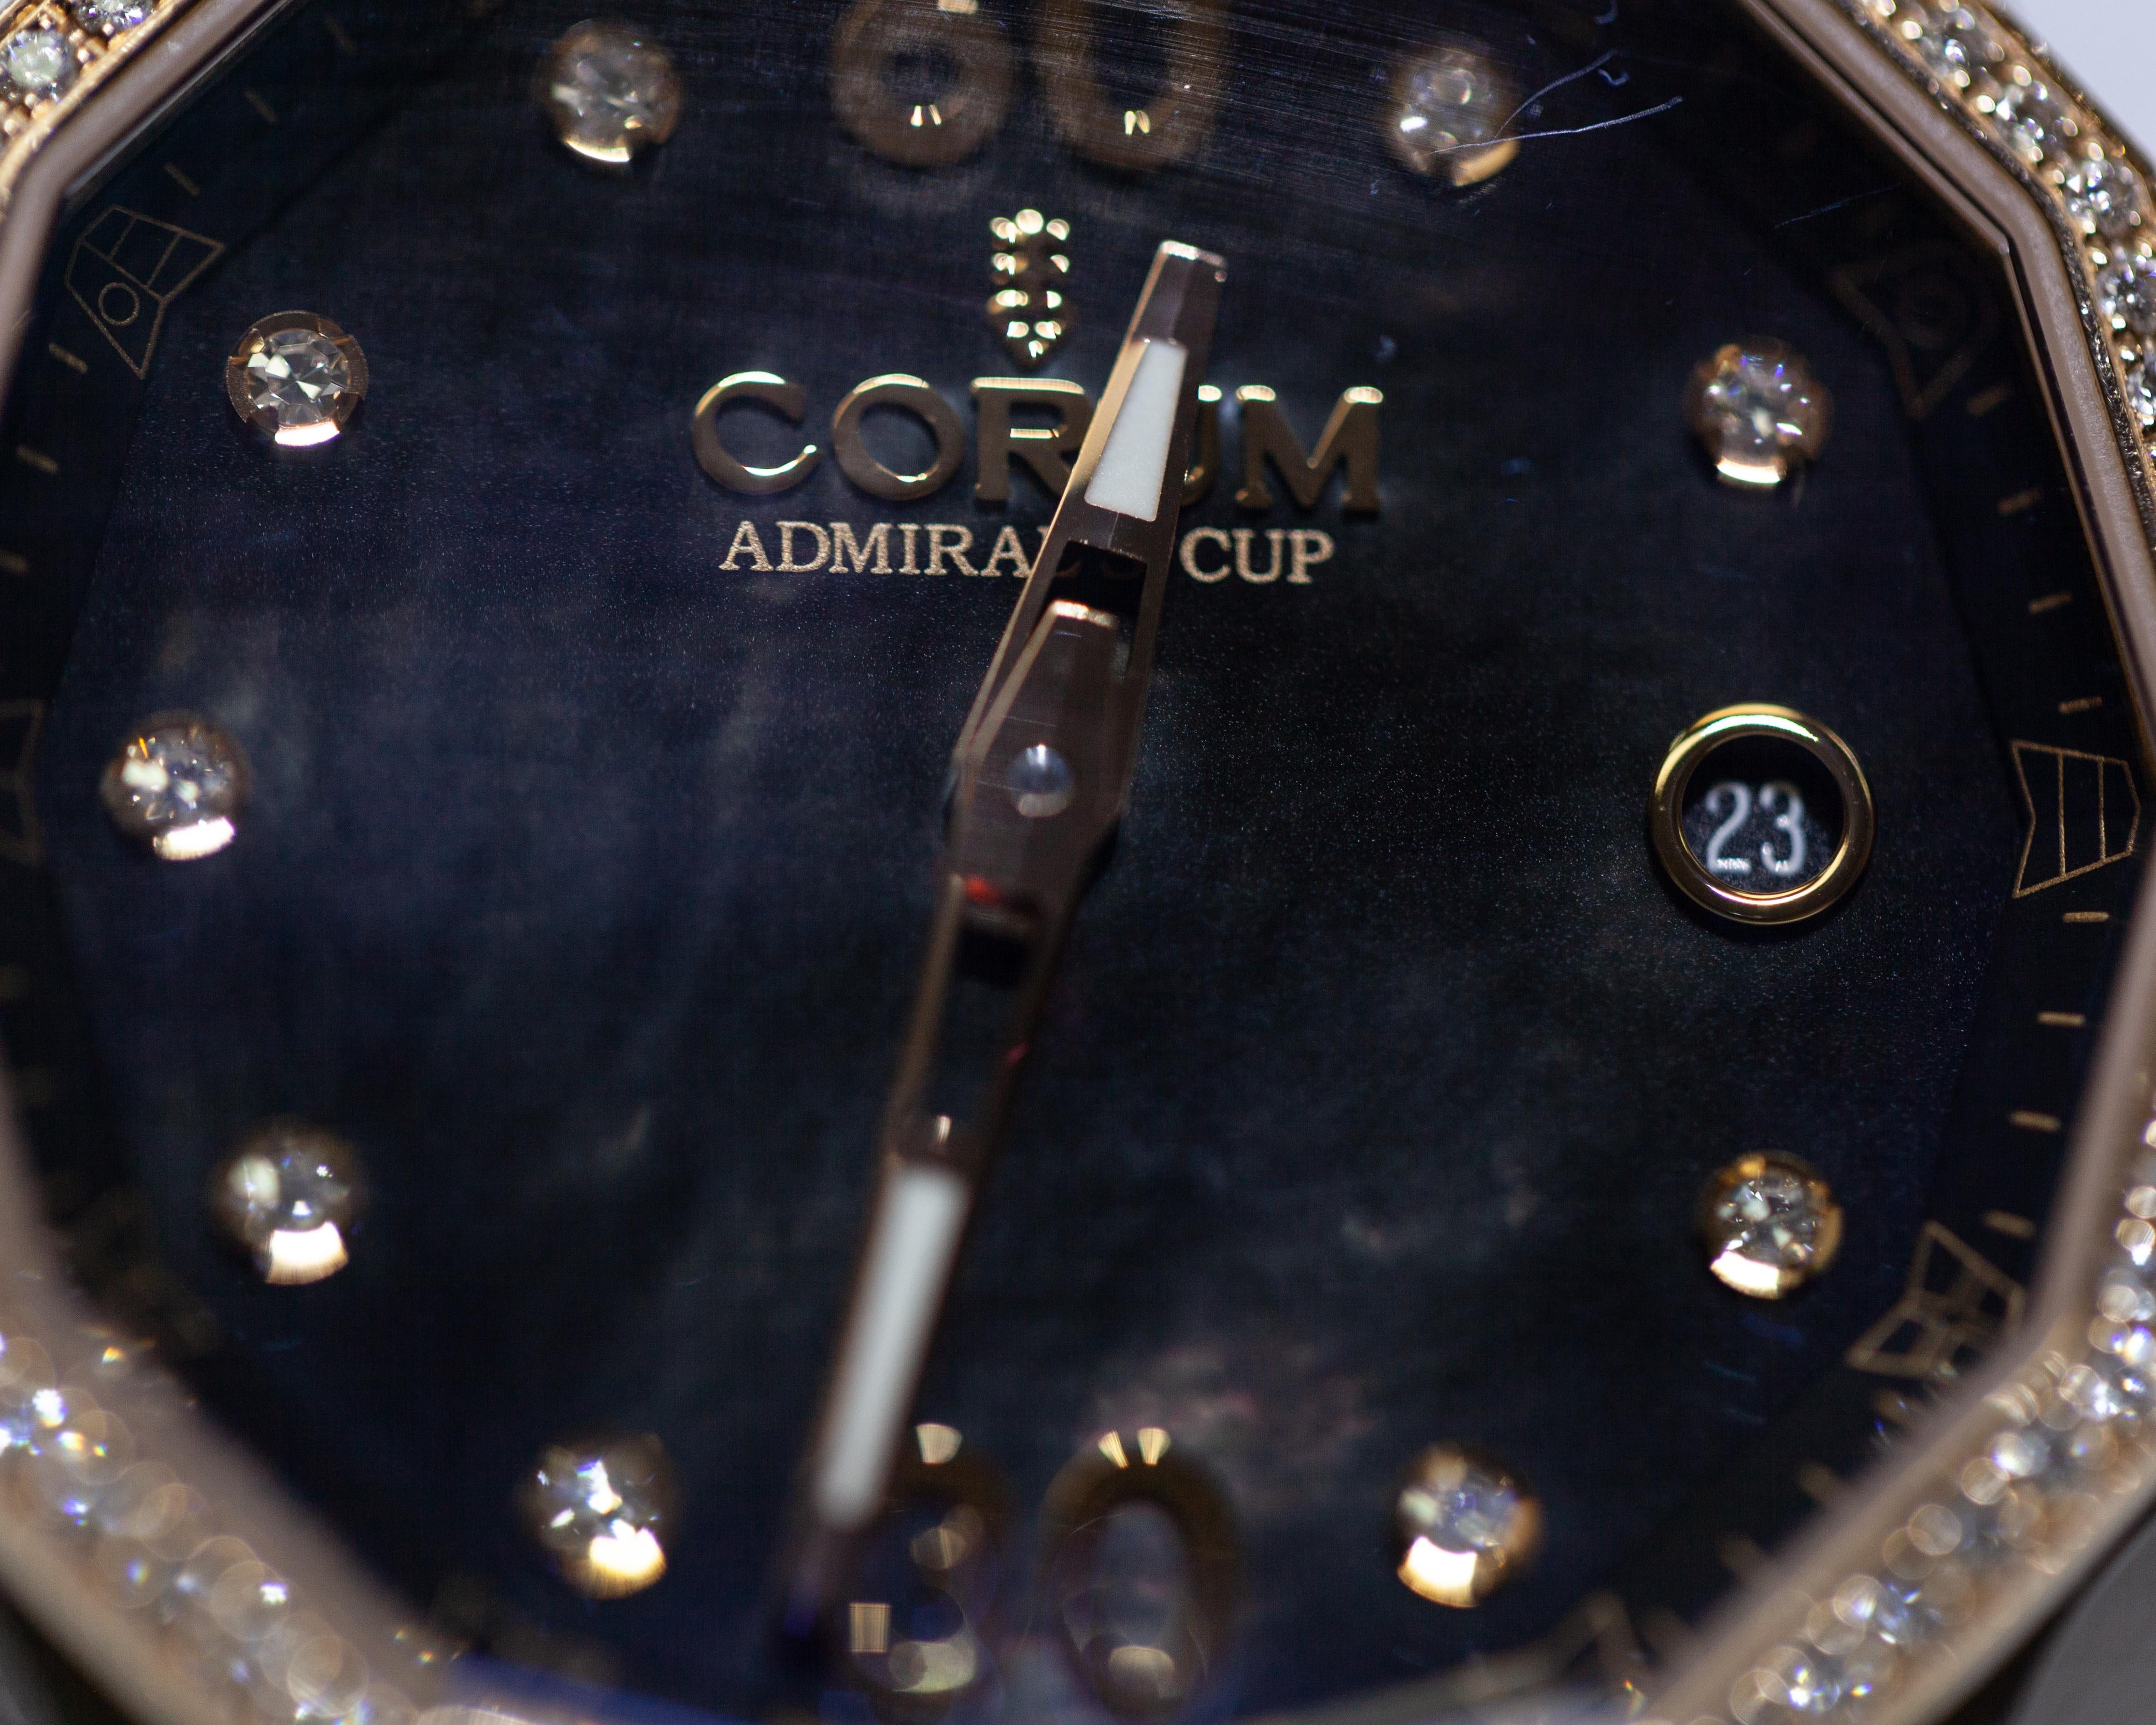 corum admirals cup 18k gold